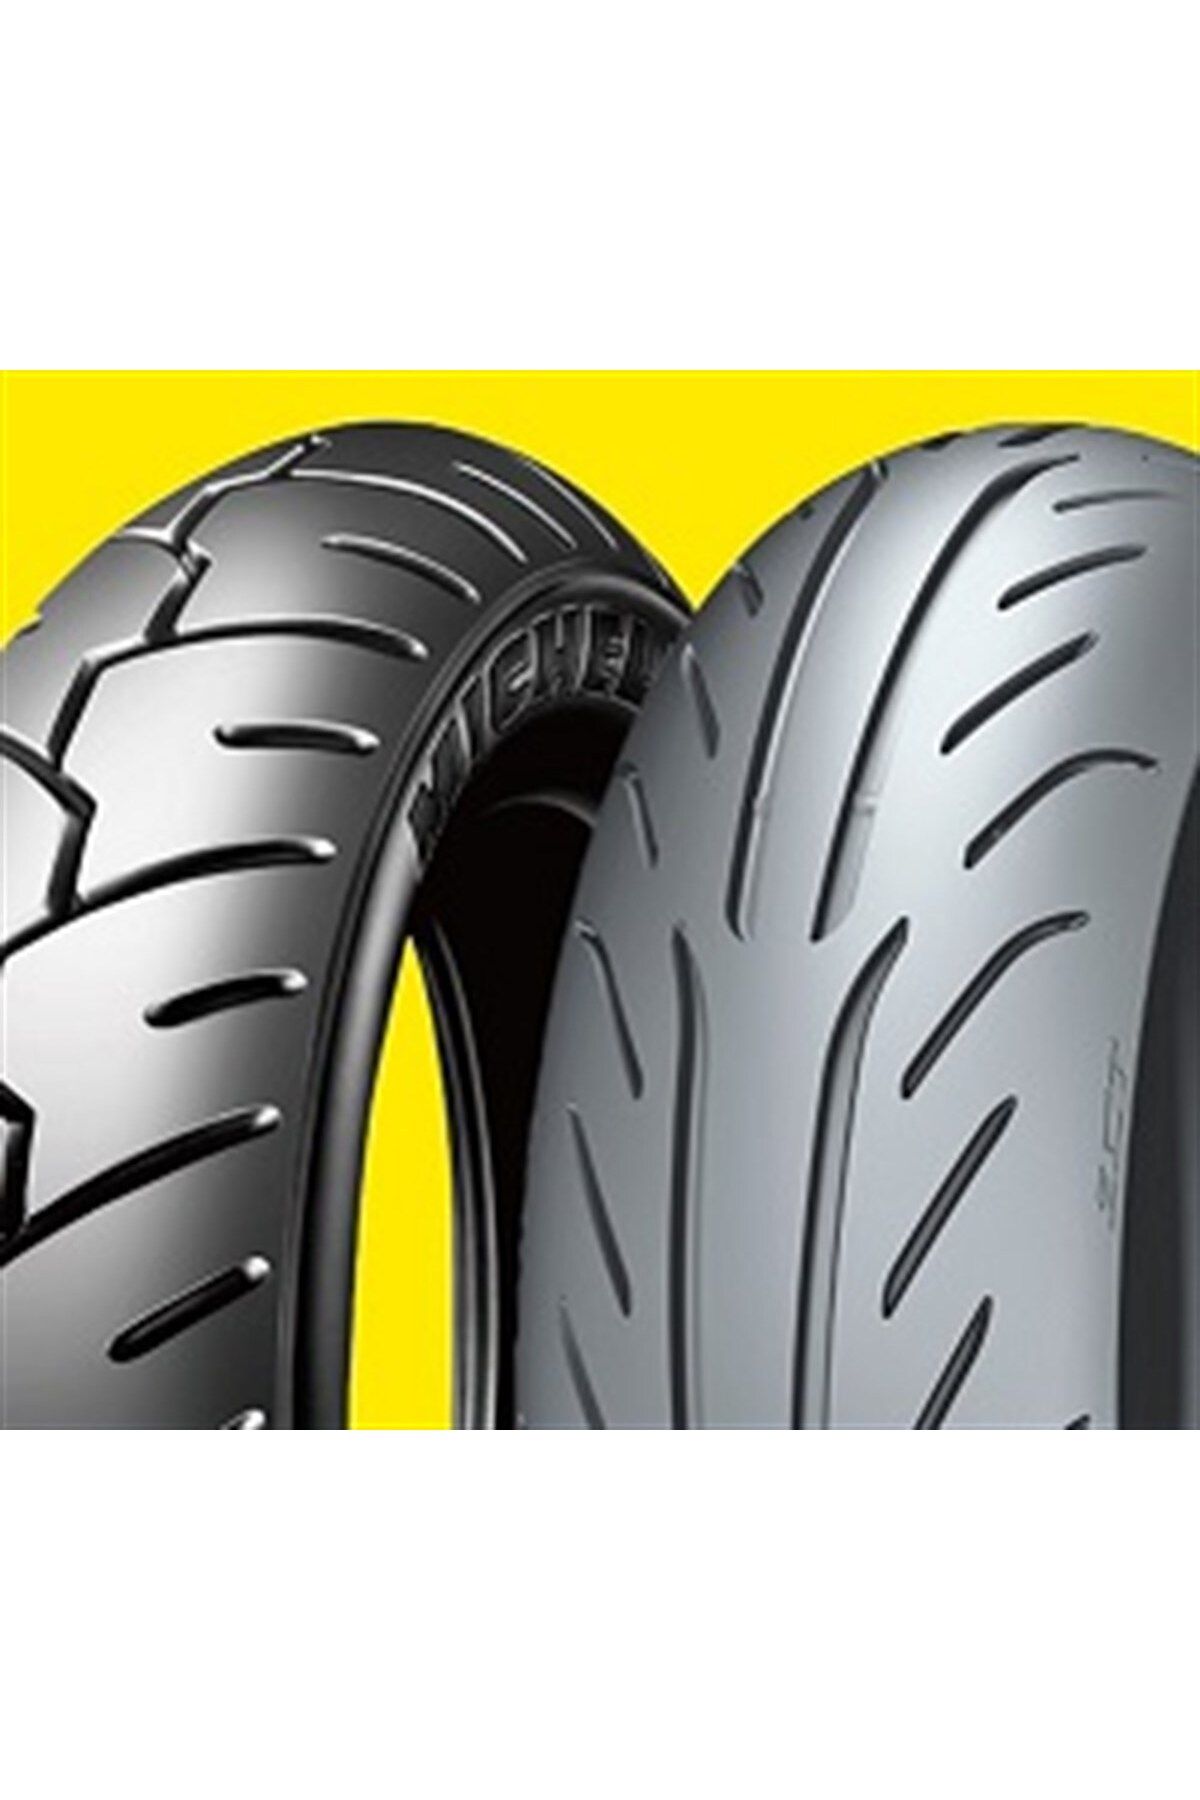 Michelin Honda Spacy Fizy Activa S Power Pure 110/70-12 Ve S1 100/90-10 Lastik Takımı